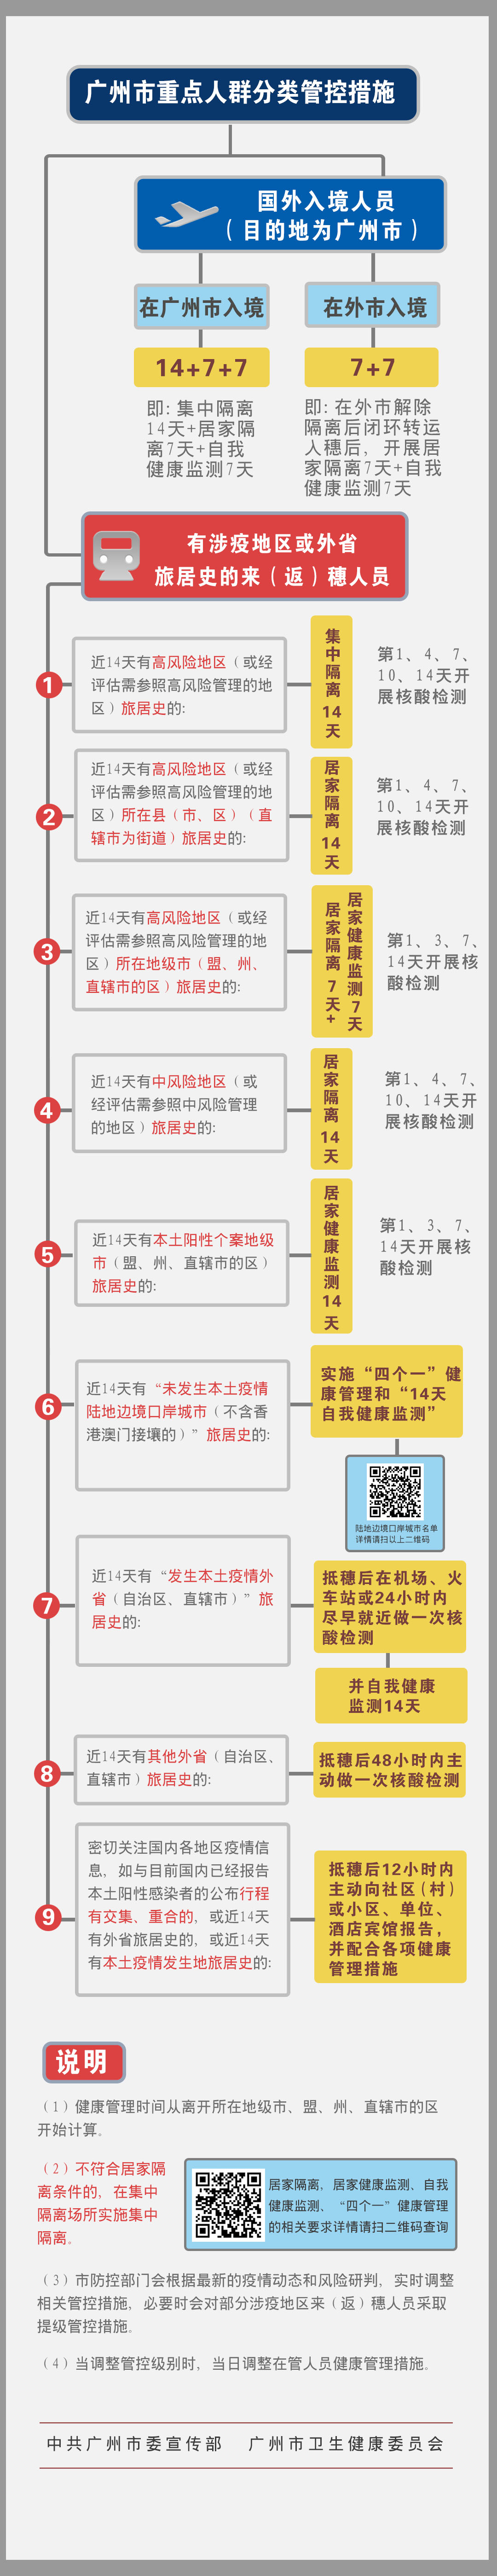 广州市重点人群分类管控措施.jpg